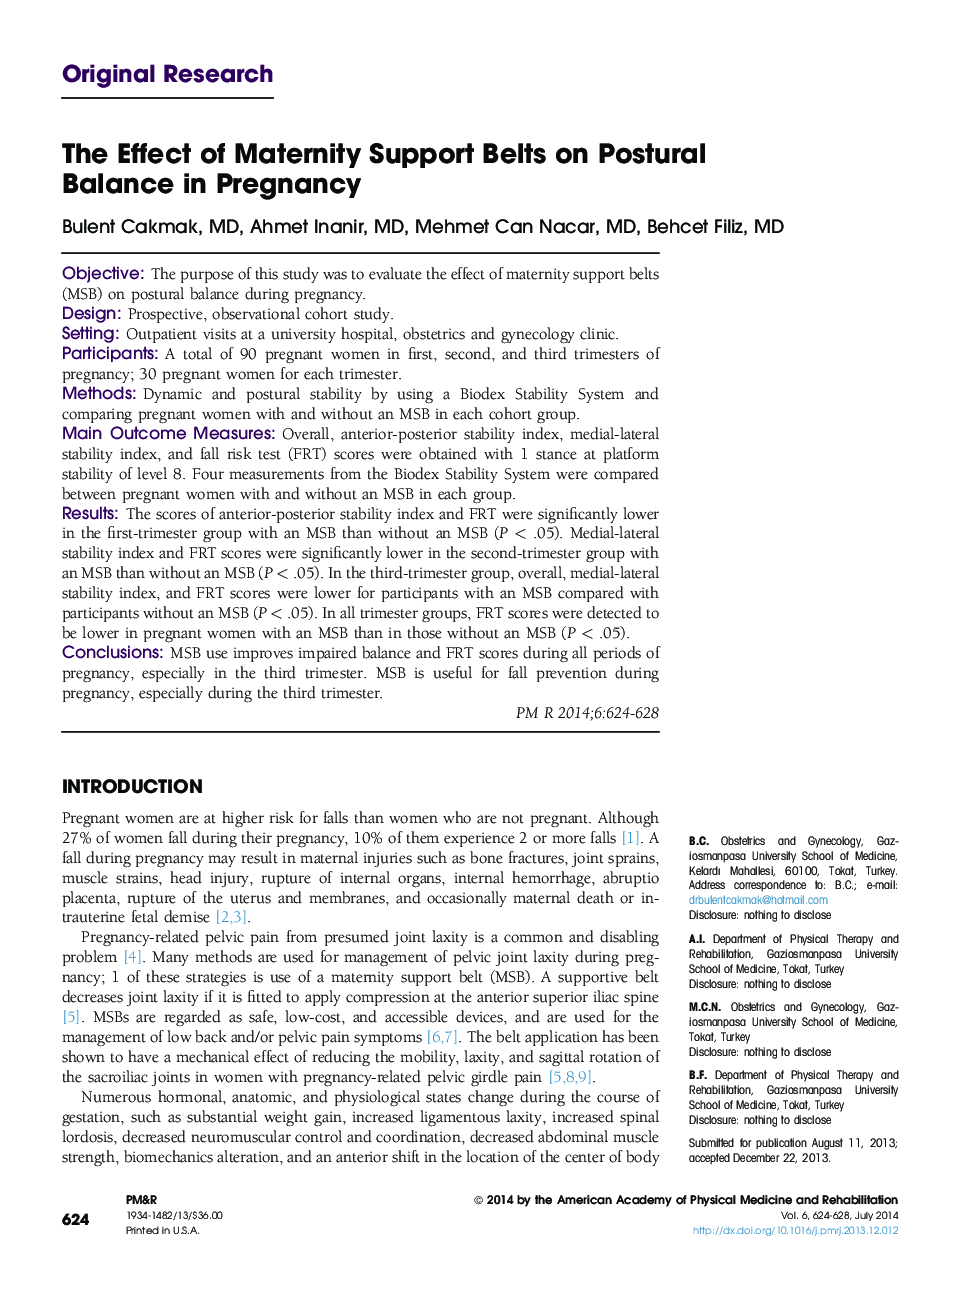 تأثیر کمربندهای زایمان بر میزان تعادل موضعی در بارداری 